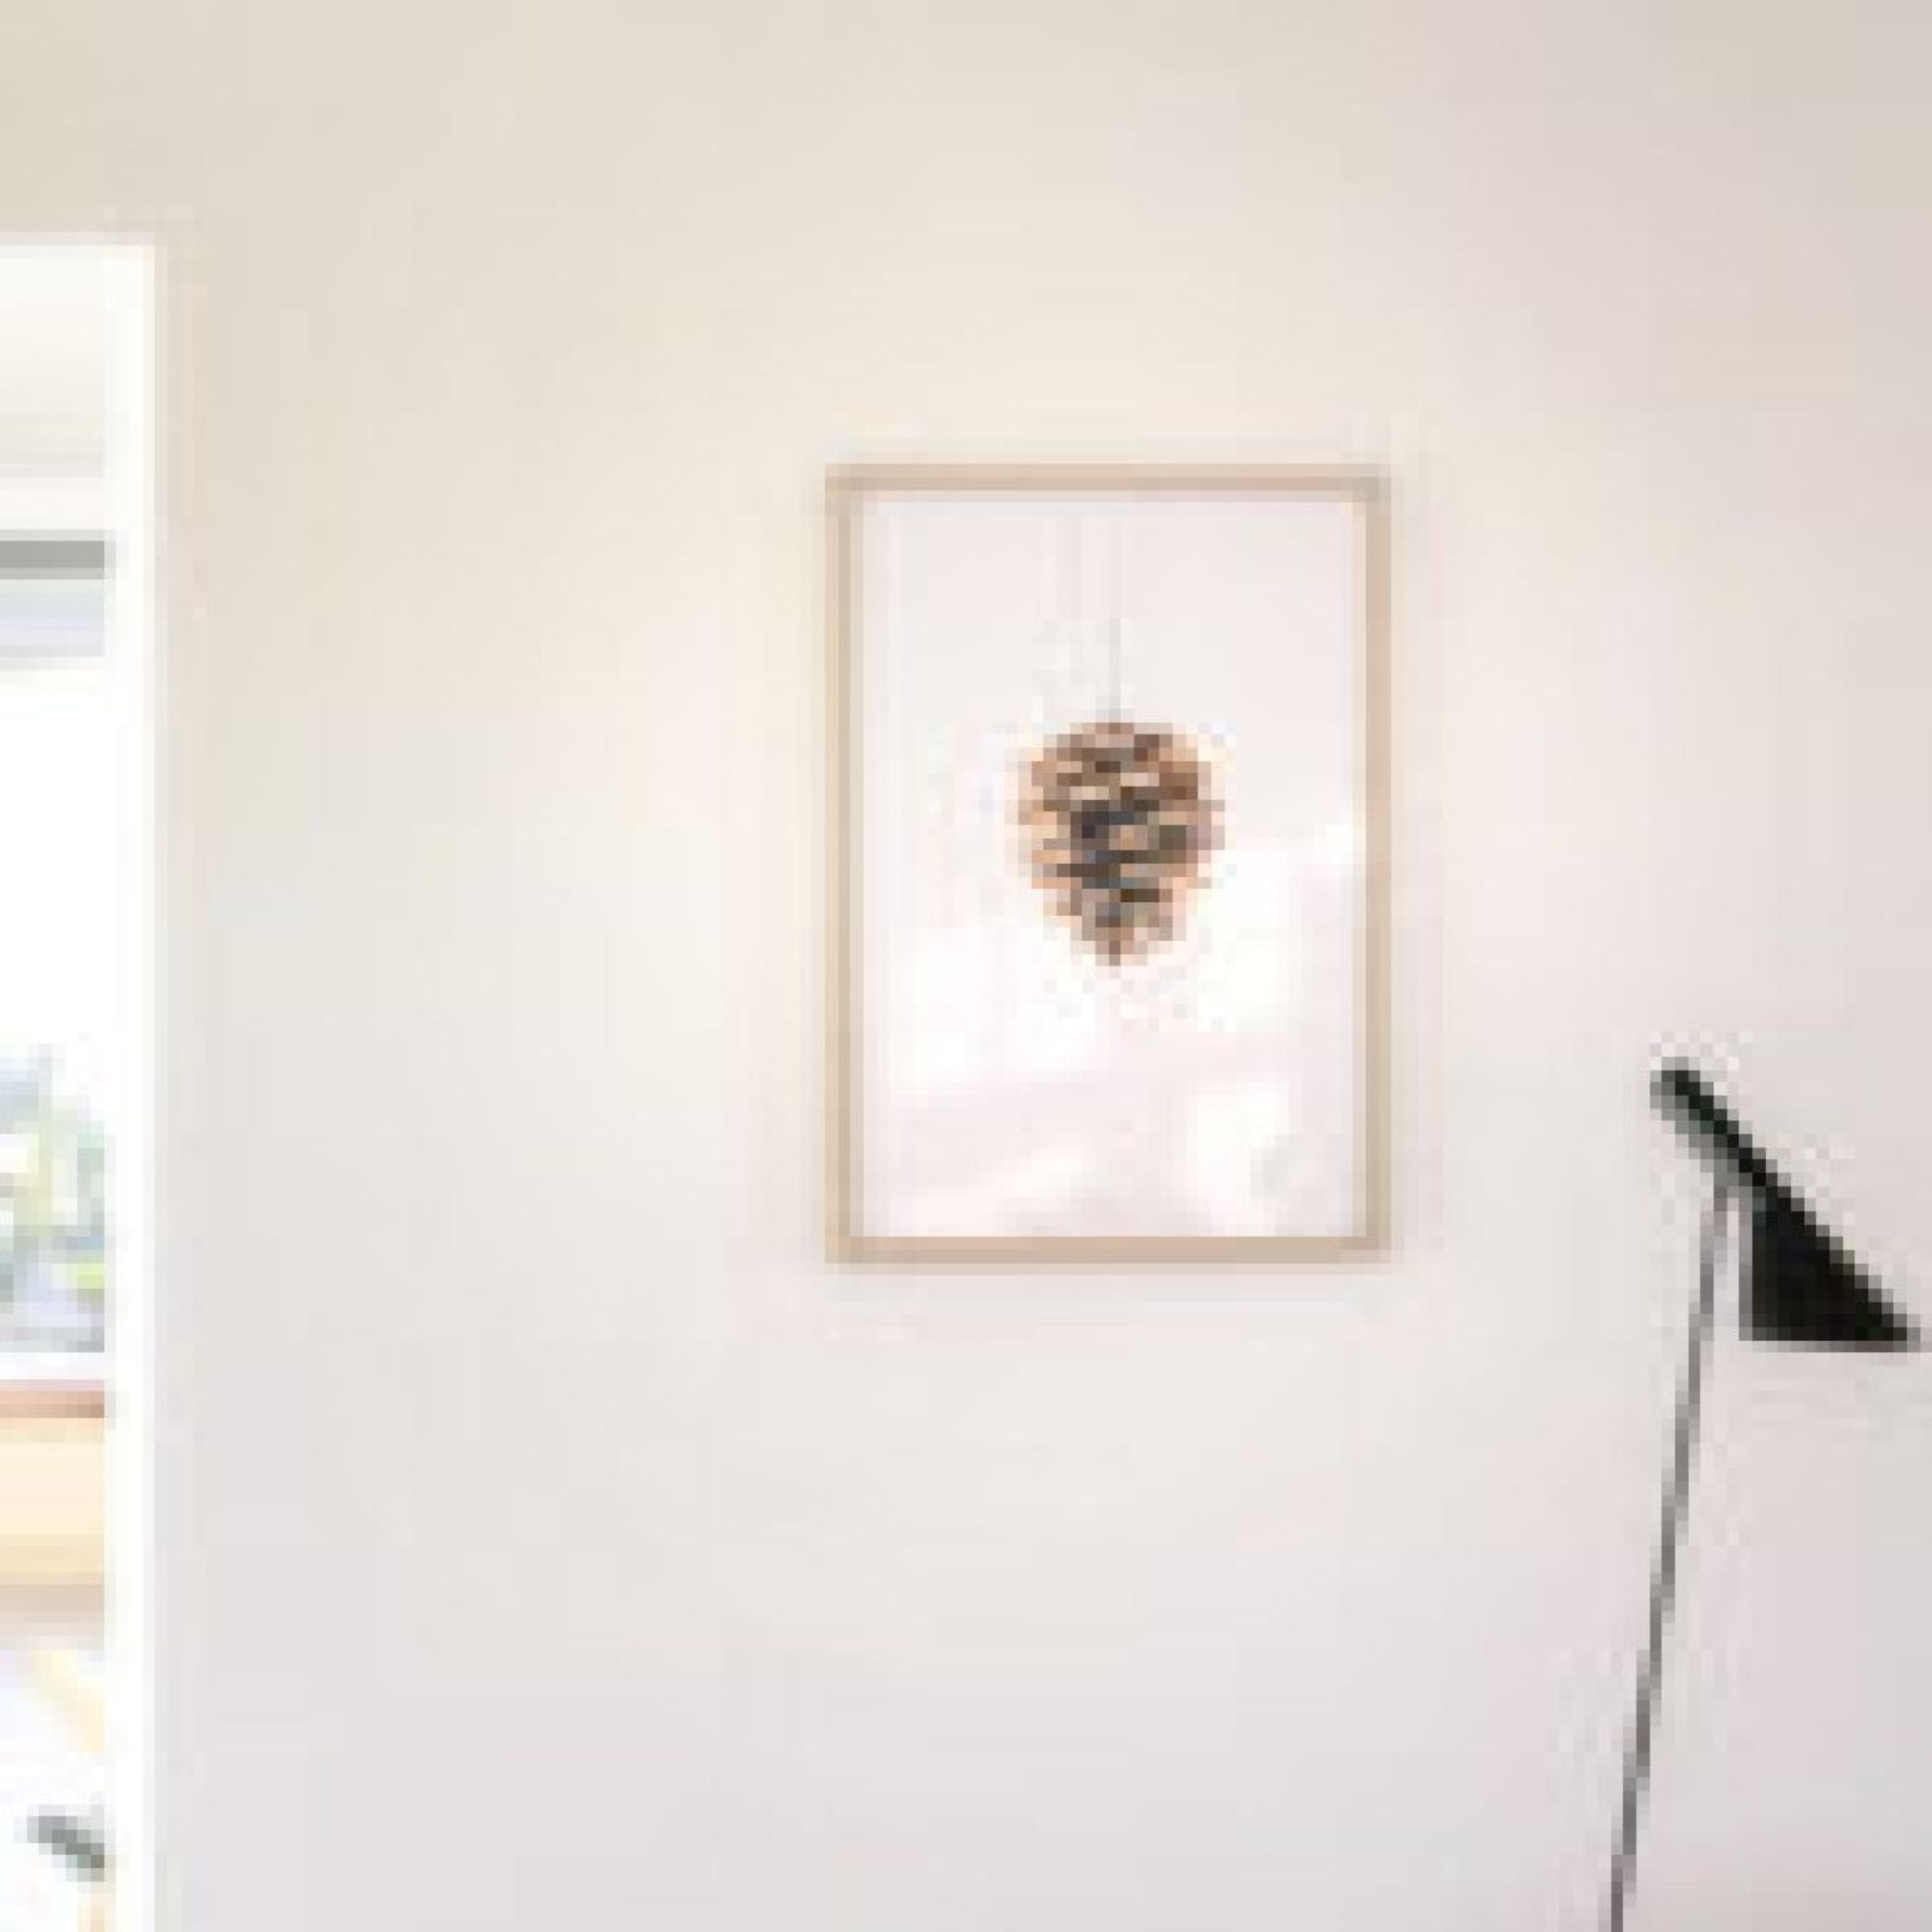 Brainchild Pine Cone Classic Poster, messing gekleurd frame 30x40 cm, witte achtergrond